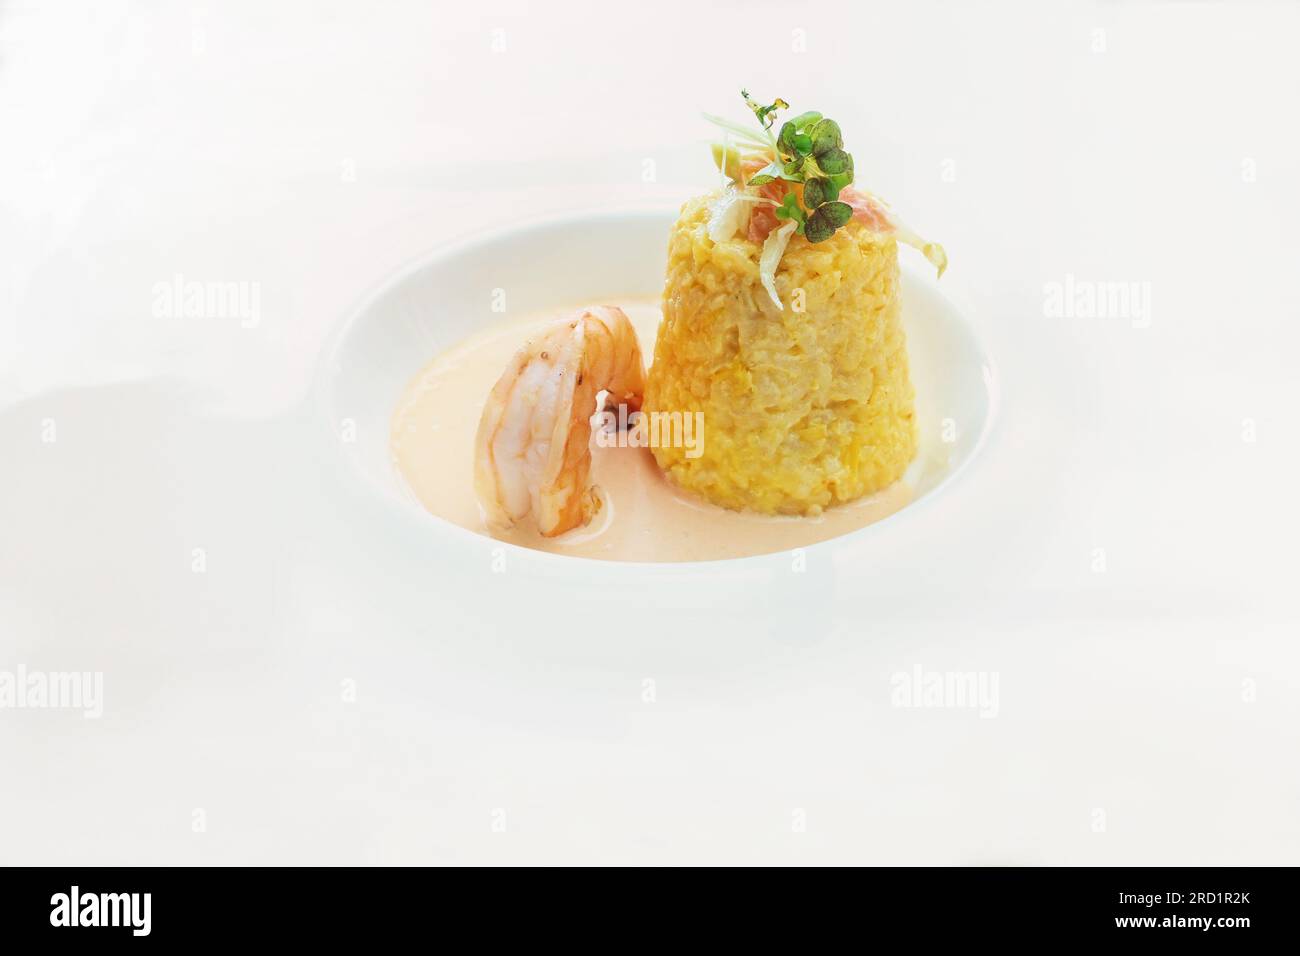 Safran-Risotto in Konusform mit Kräuter- und Gemüsegarnierung, einer großen Garnelen- und Krustentiersauce auf einem modernen weißen Teller, köstliches Fisch- und Meeresfrüchtegericht, C. Stockfoto